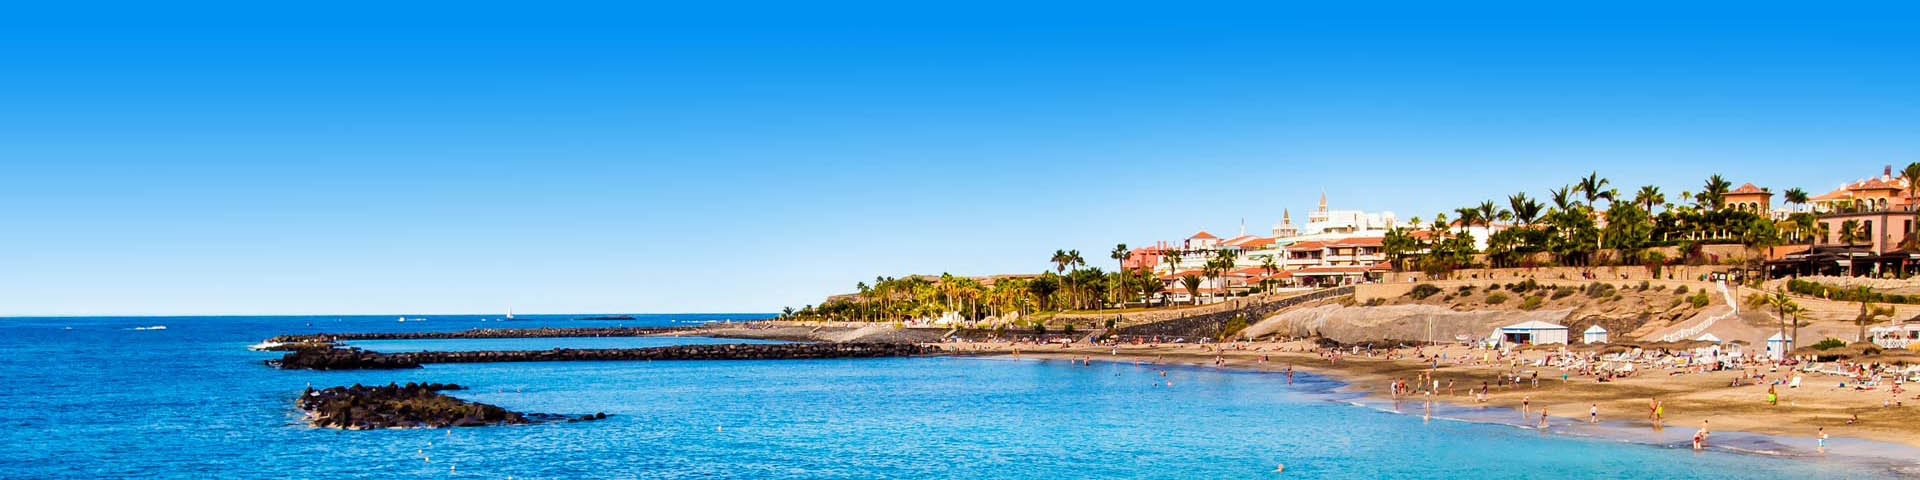 Kustlijn op het eiland Tenerife met hotels aan zee